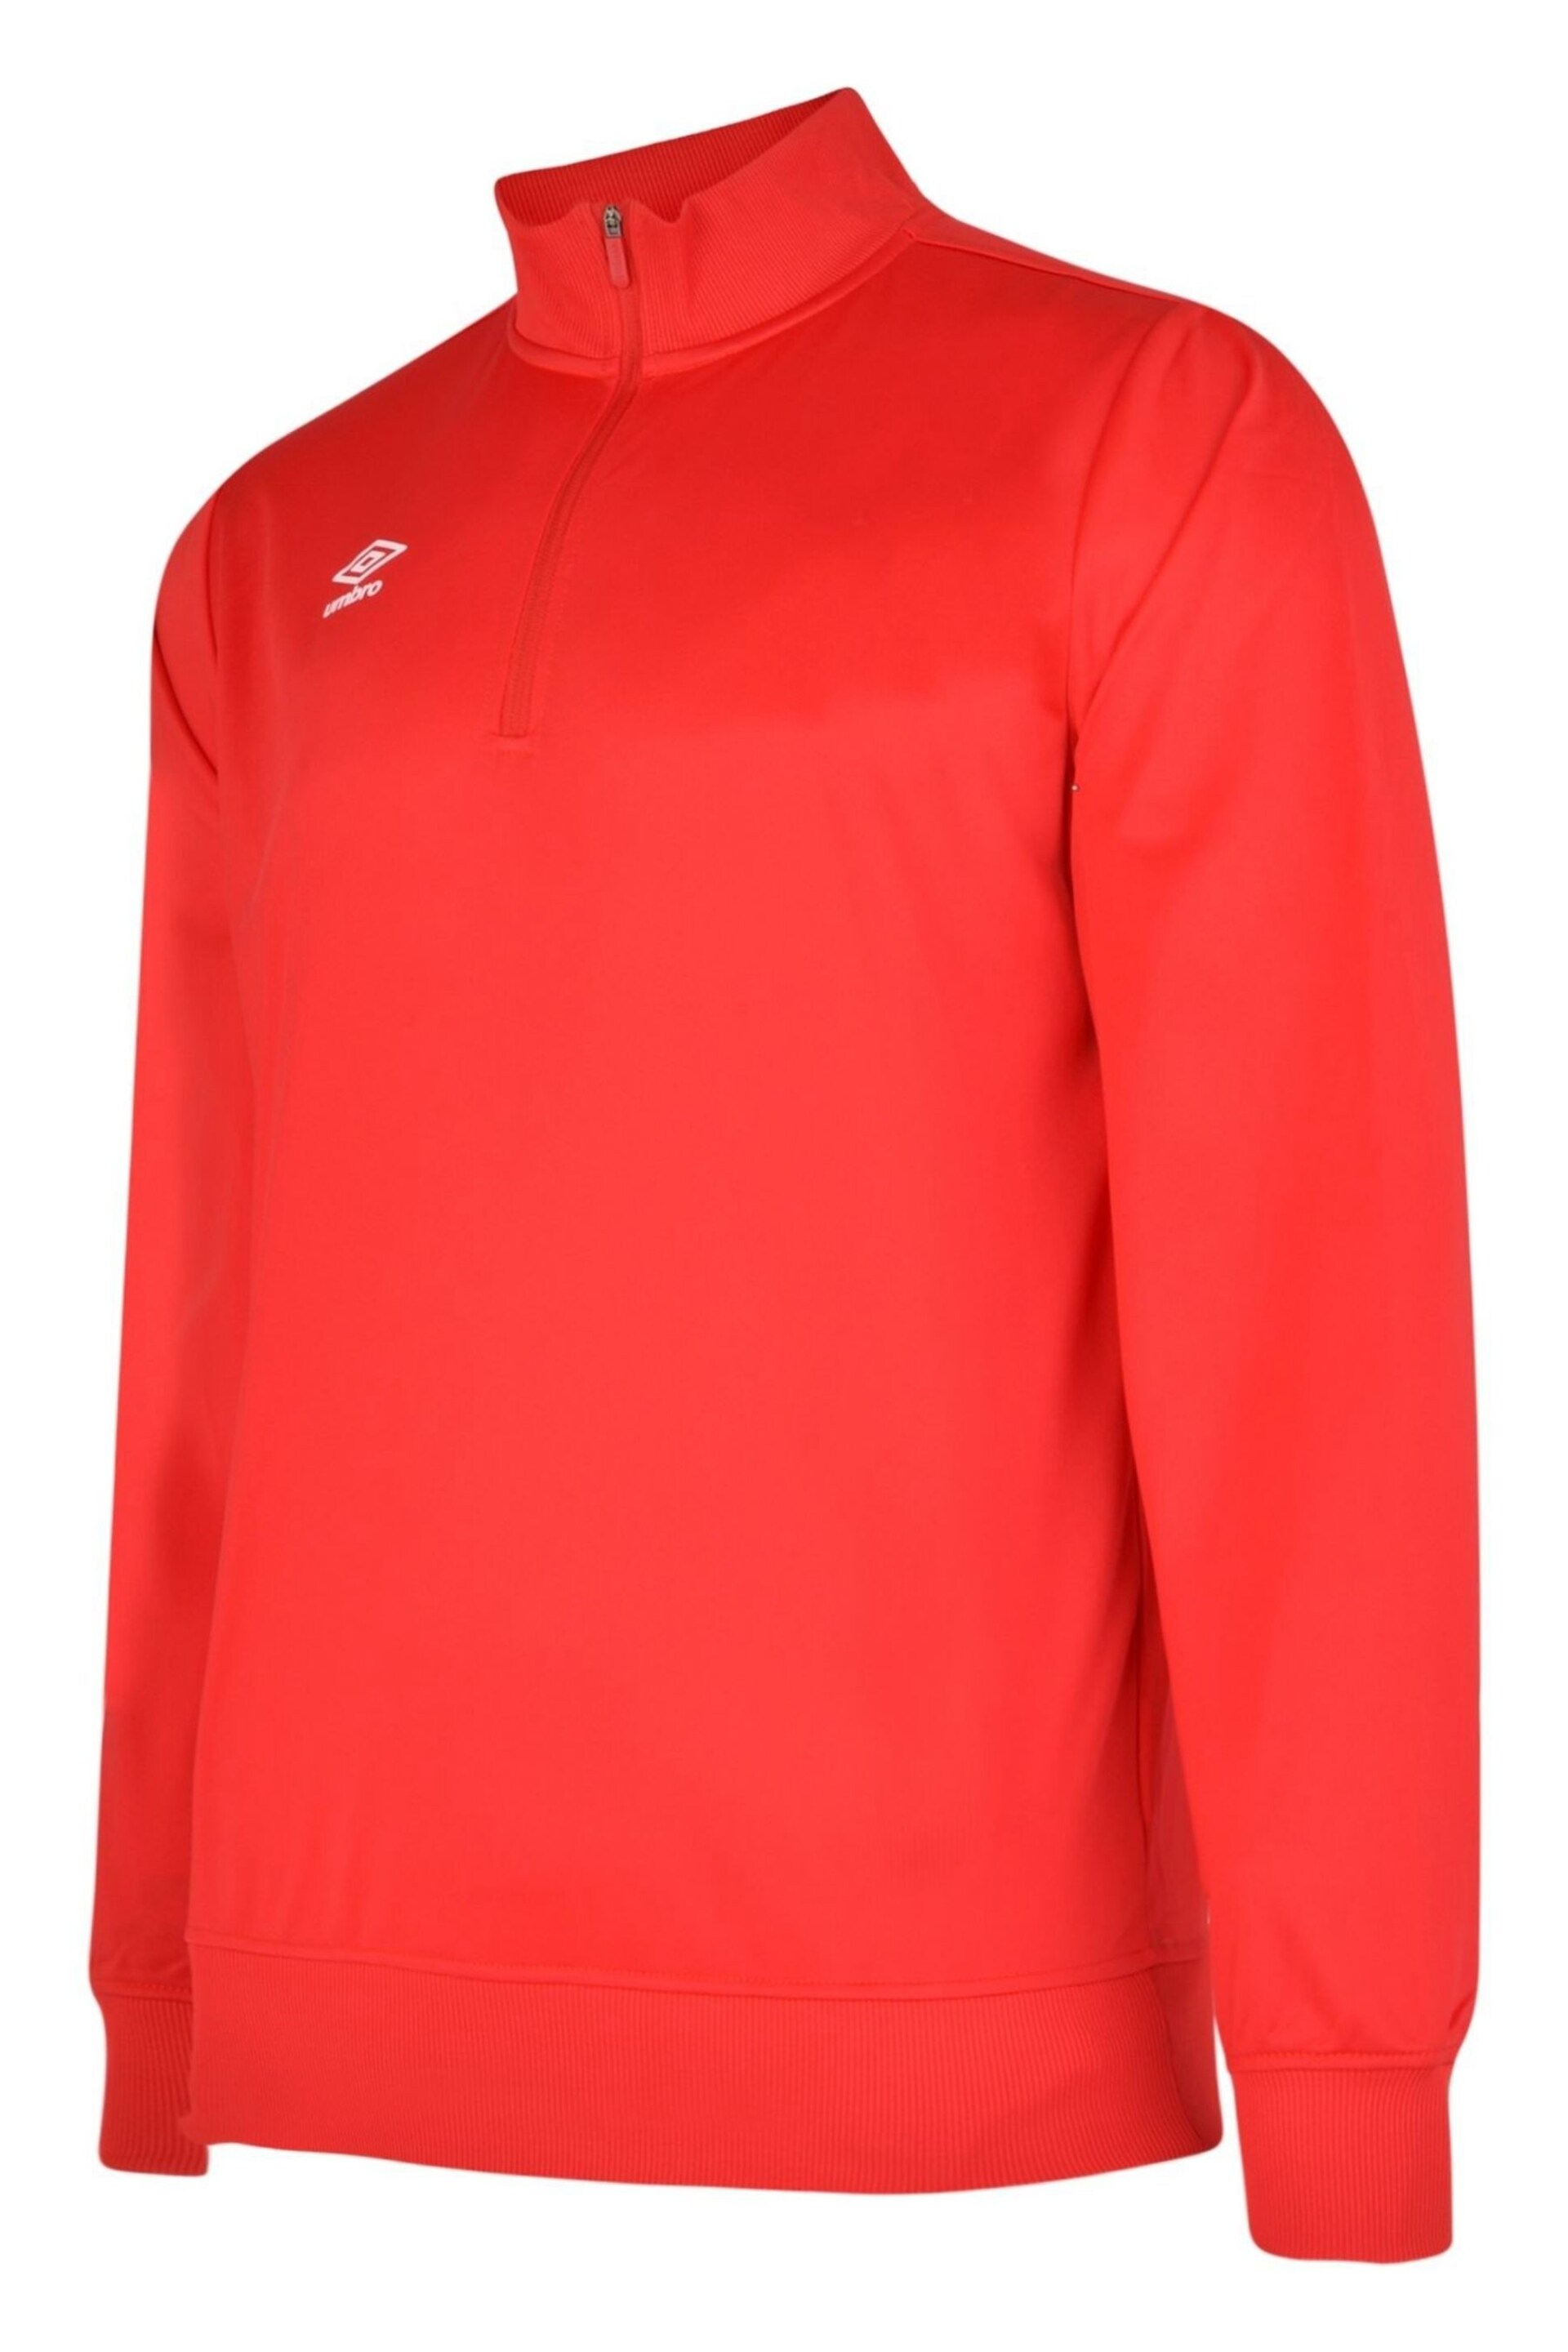 Umbro Red Half Zip Poly Sweatshirt - Image 1 of 1